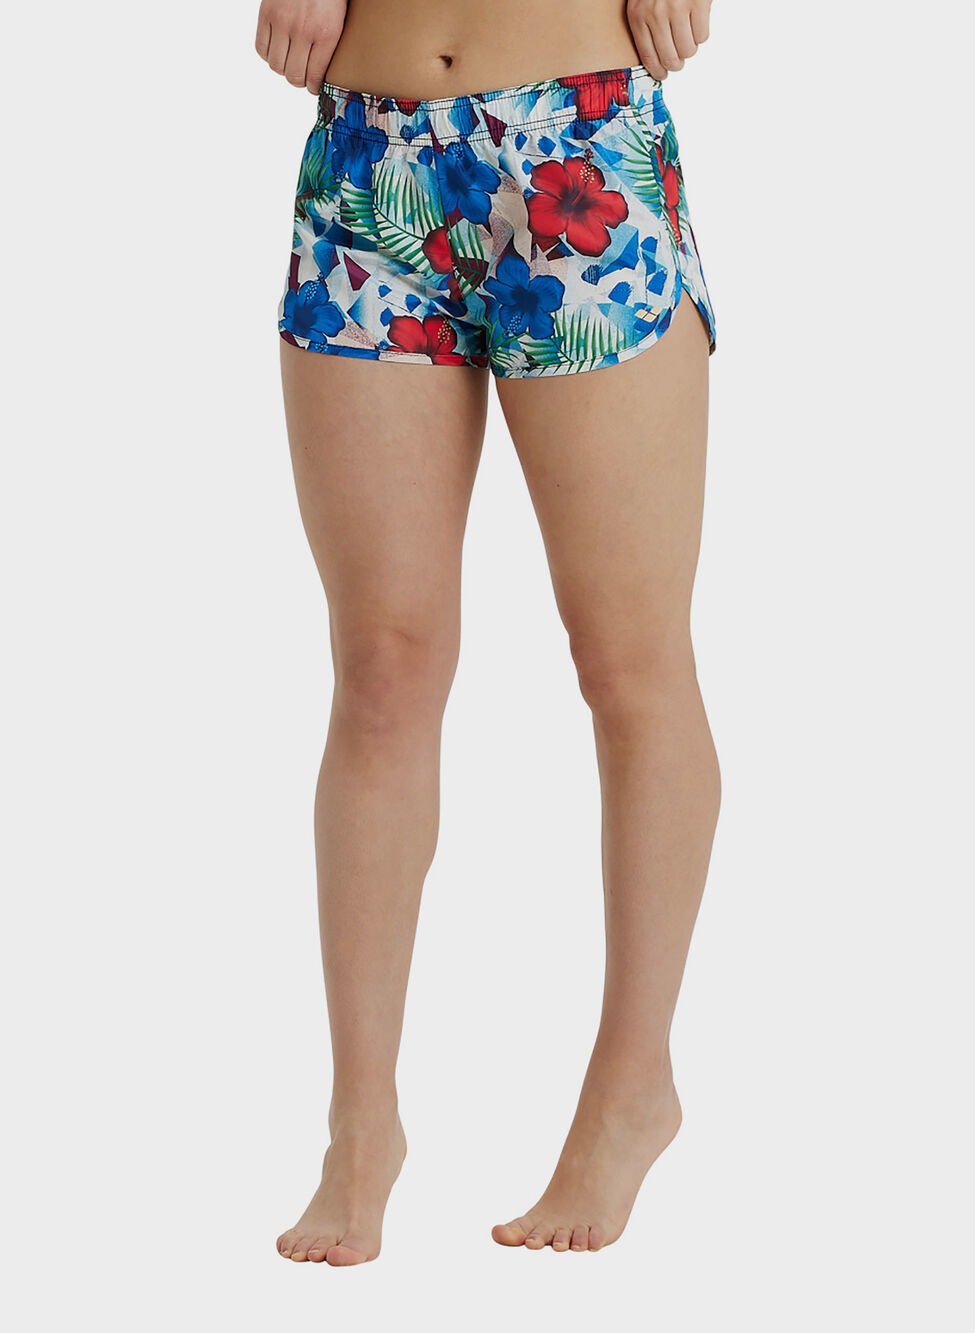 Visita lo Store di ArenaARENA Women's Beach Short Allover Pantaloncino da Spiaggia Donna Pacco da 1 